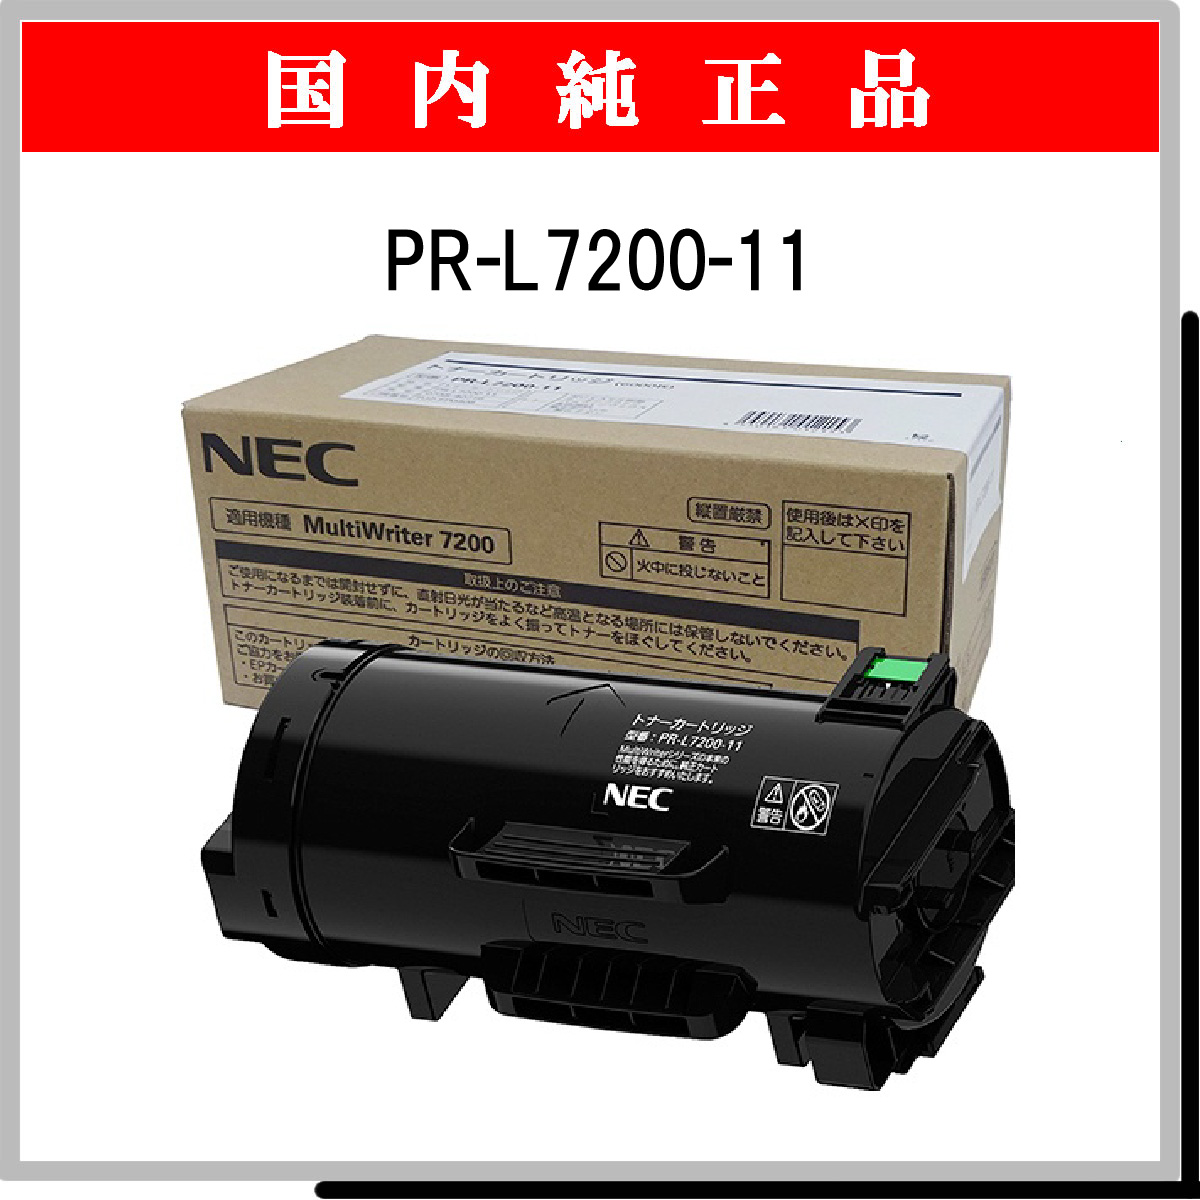 話題の人気 NEC トナーカートリッジ PR-L5500-11 1個 送料無料